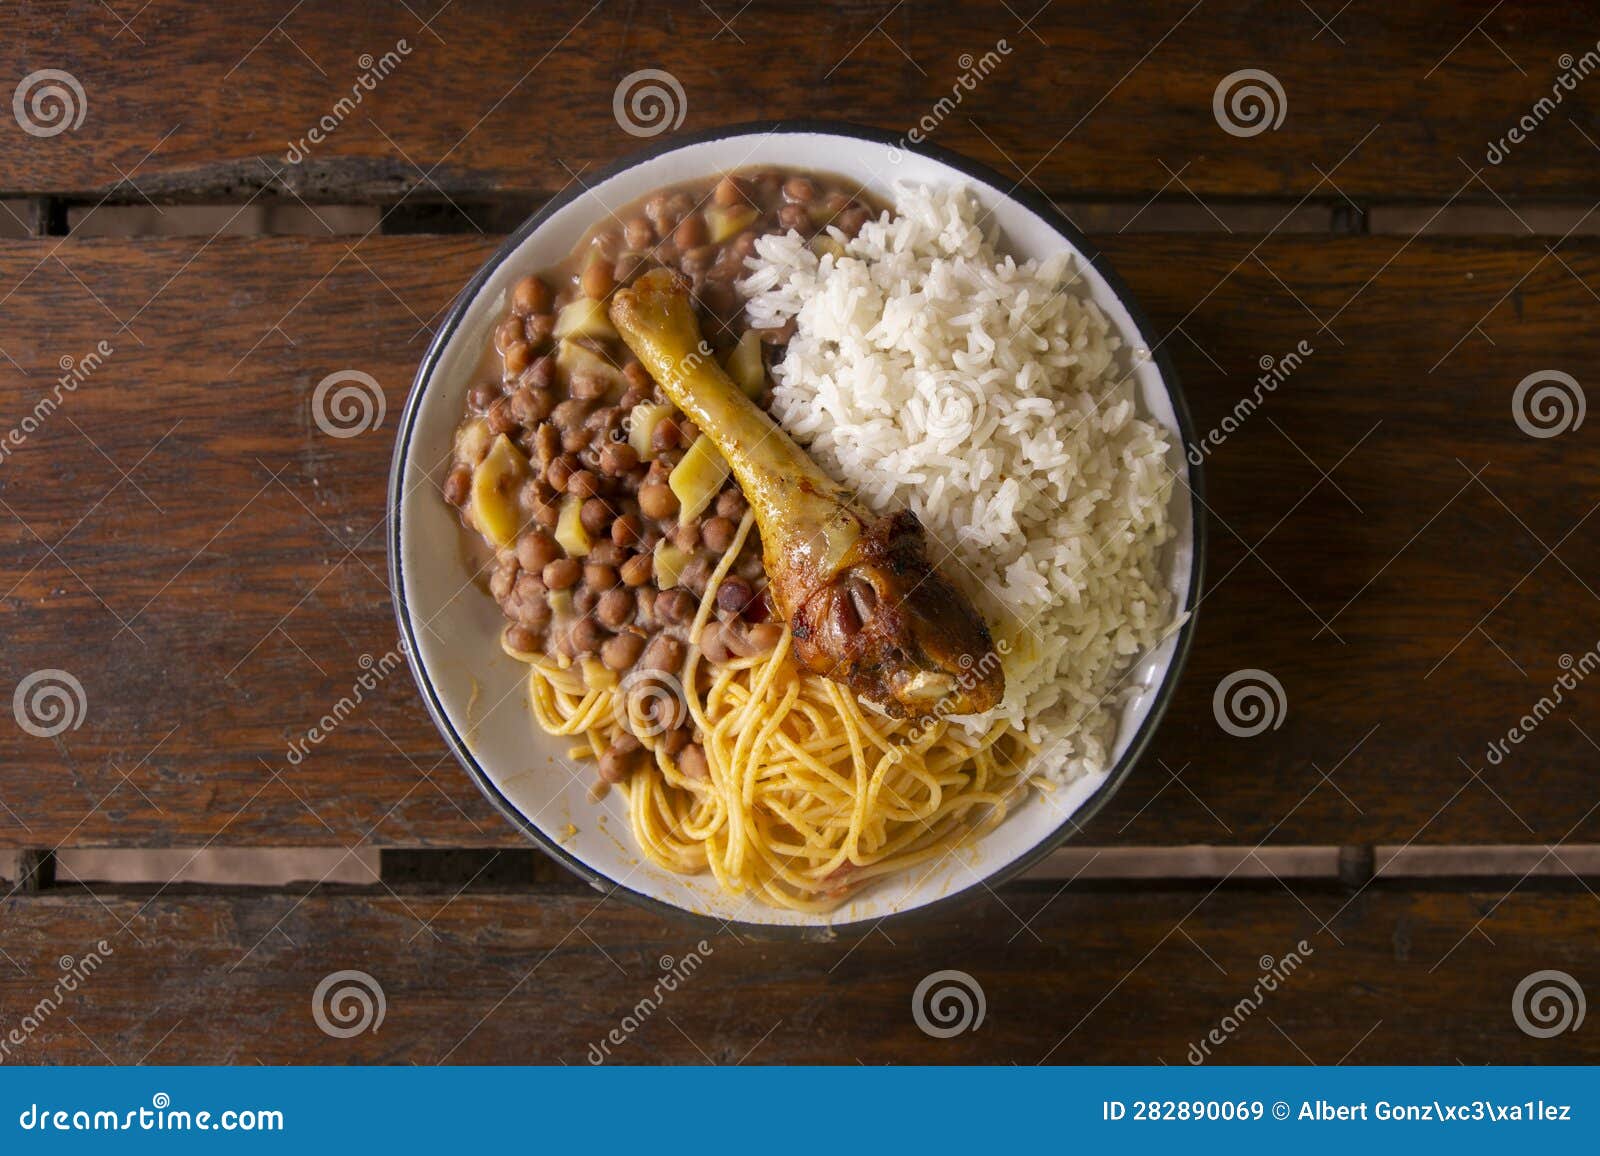 merienda de la chakra with chicken, rice and legumes.